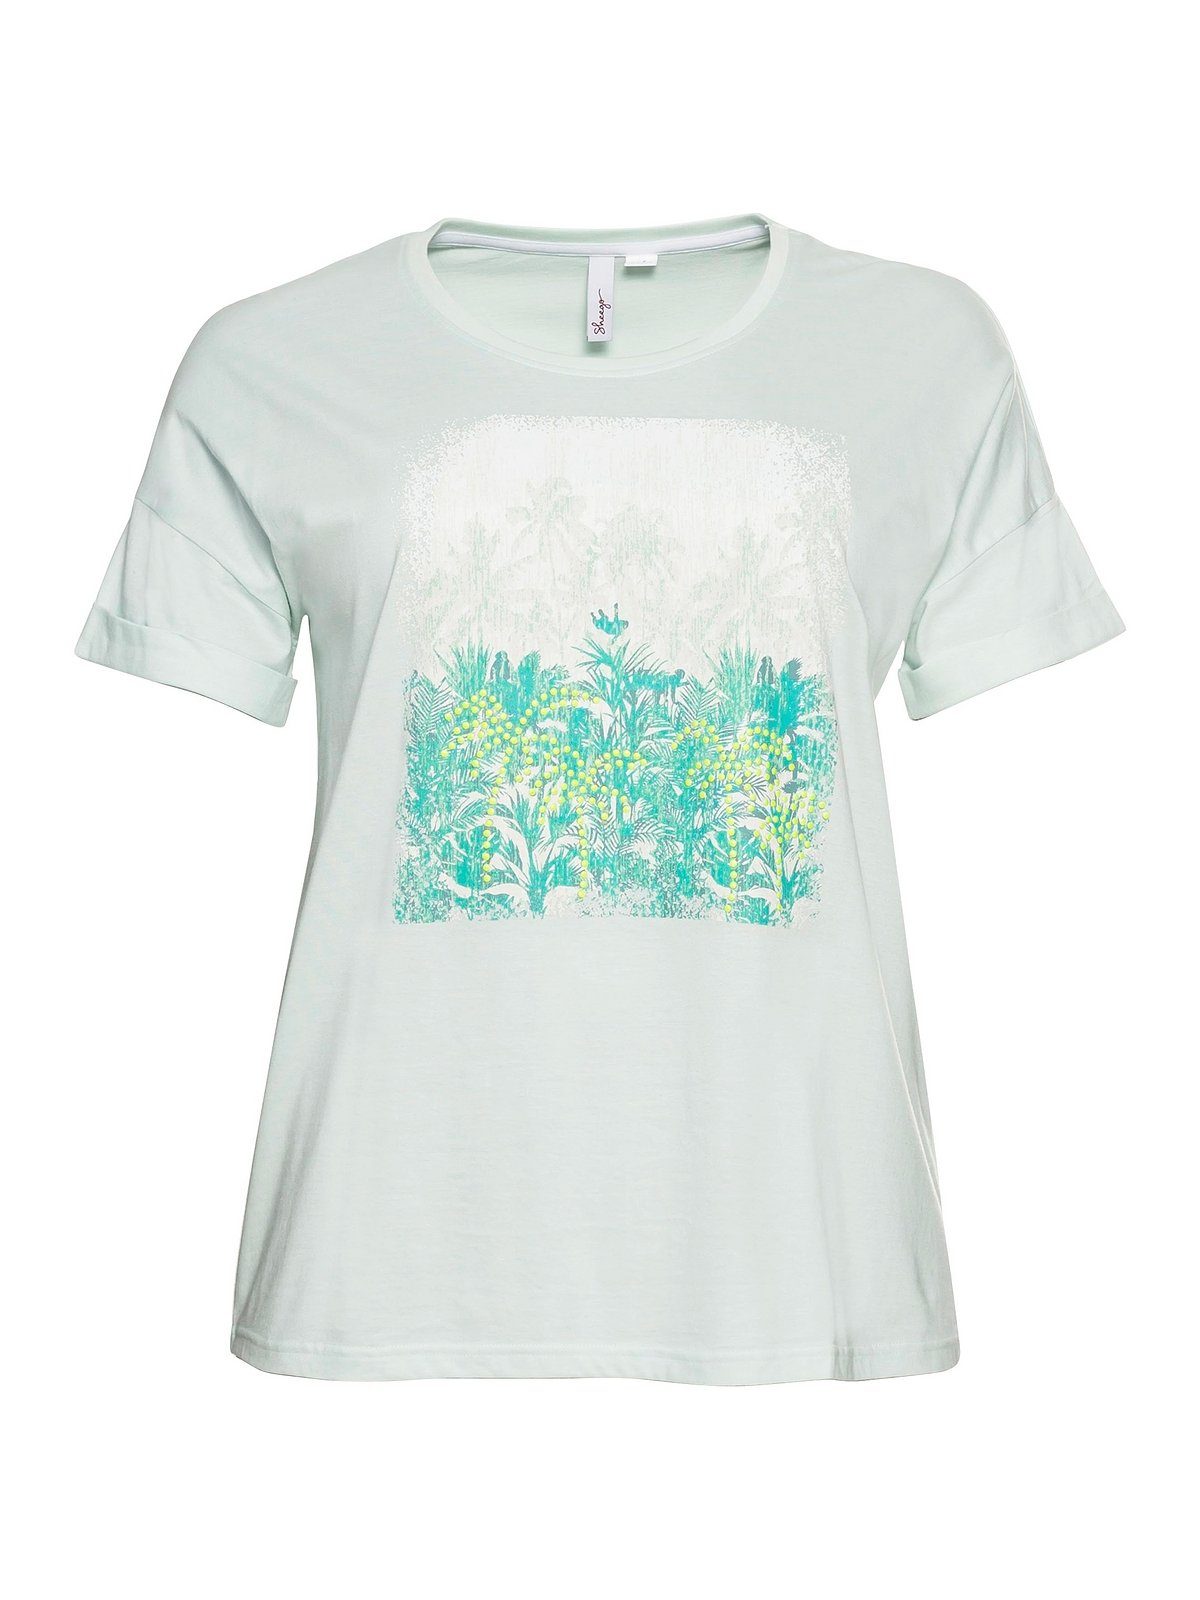 Sheego T-Shirt Große Ärmelaufschlag Größen und blassaqua mit Frontdruck